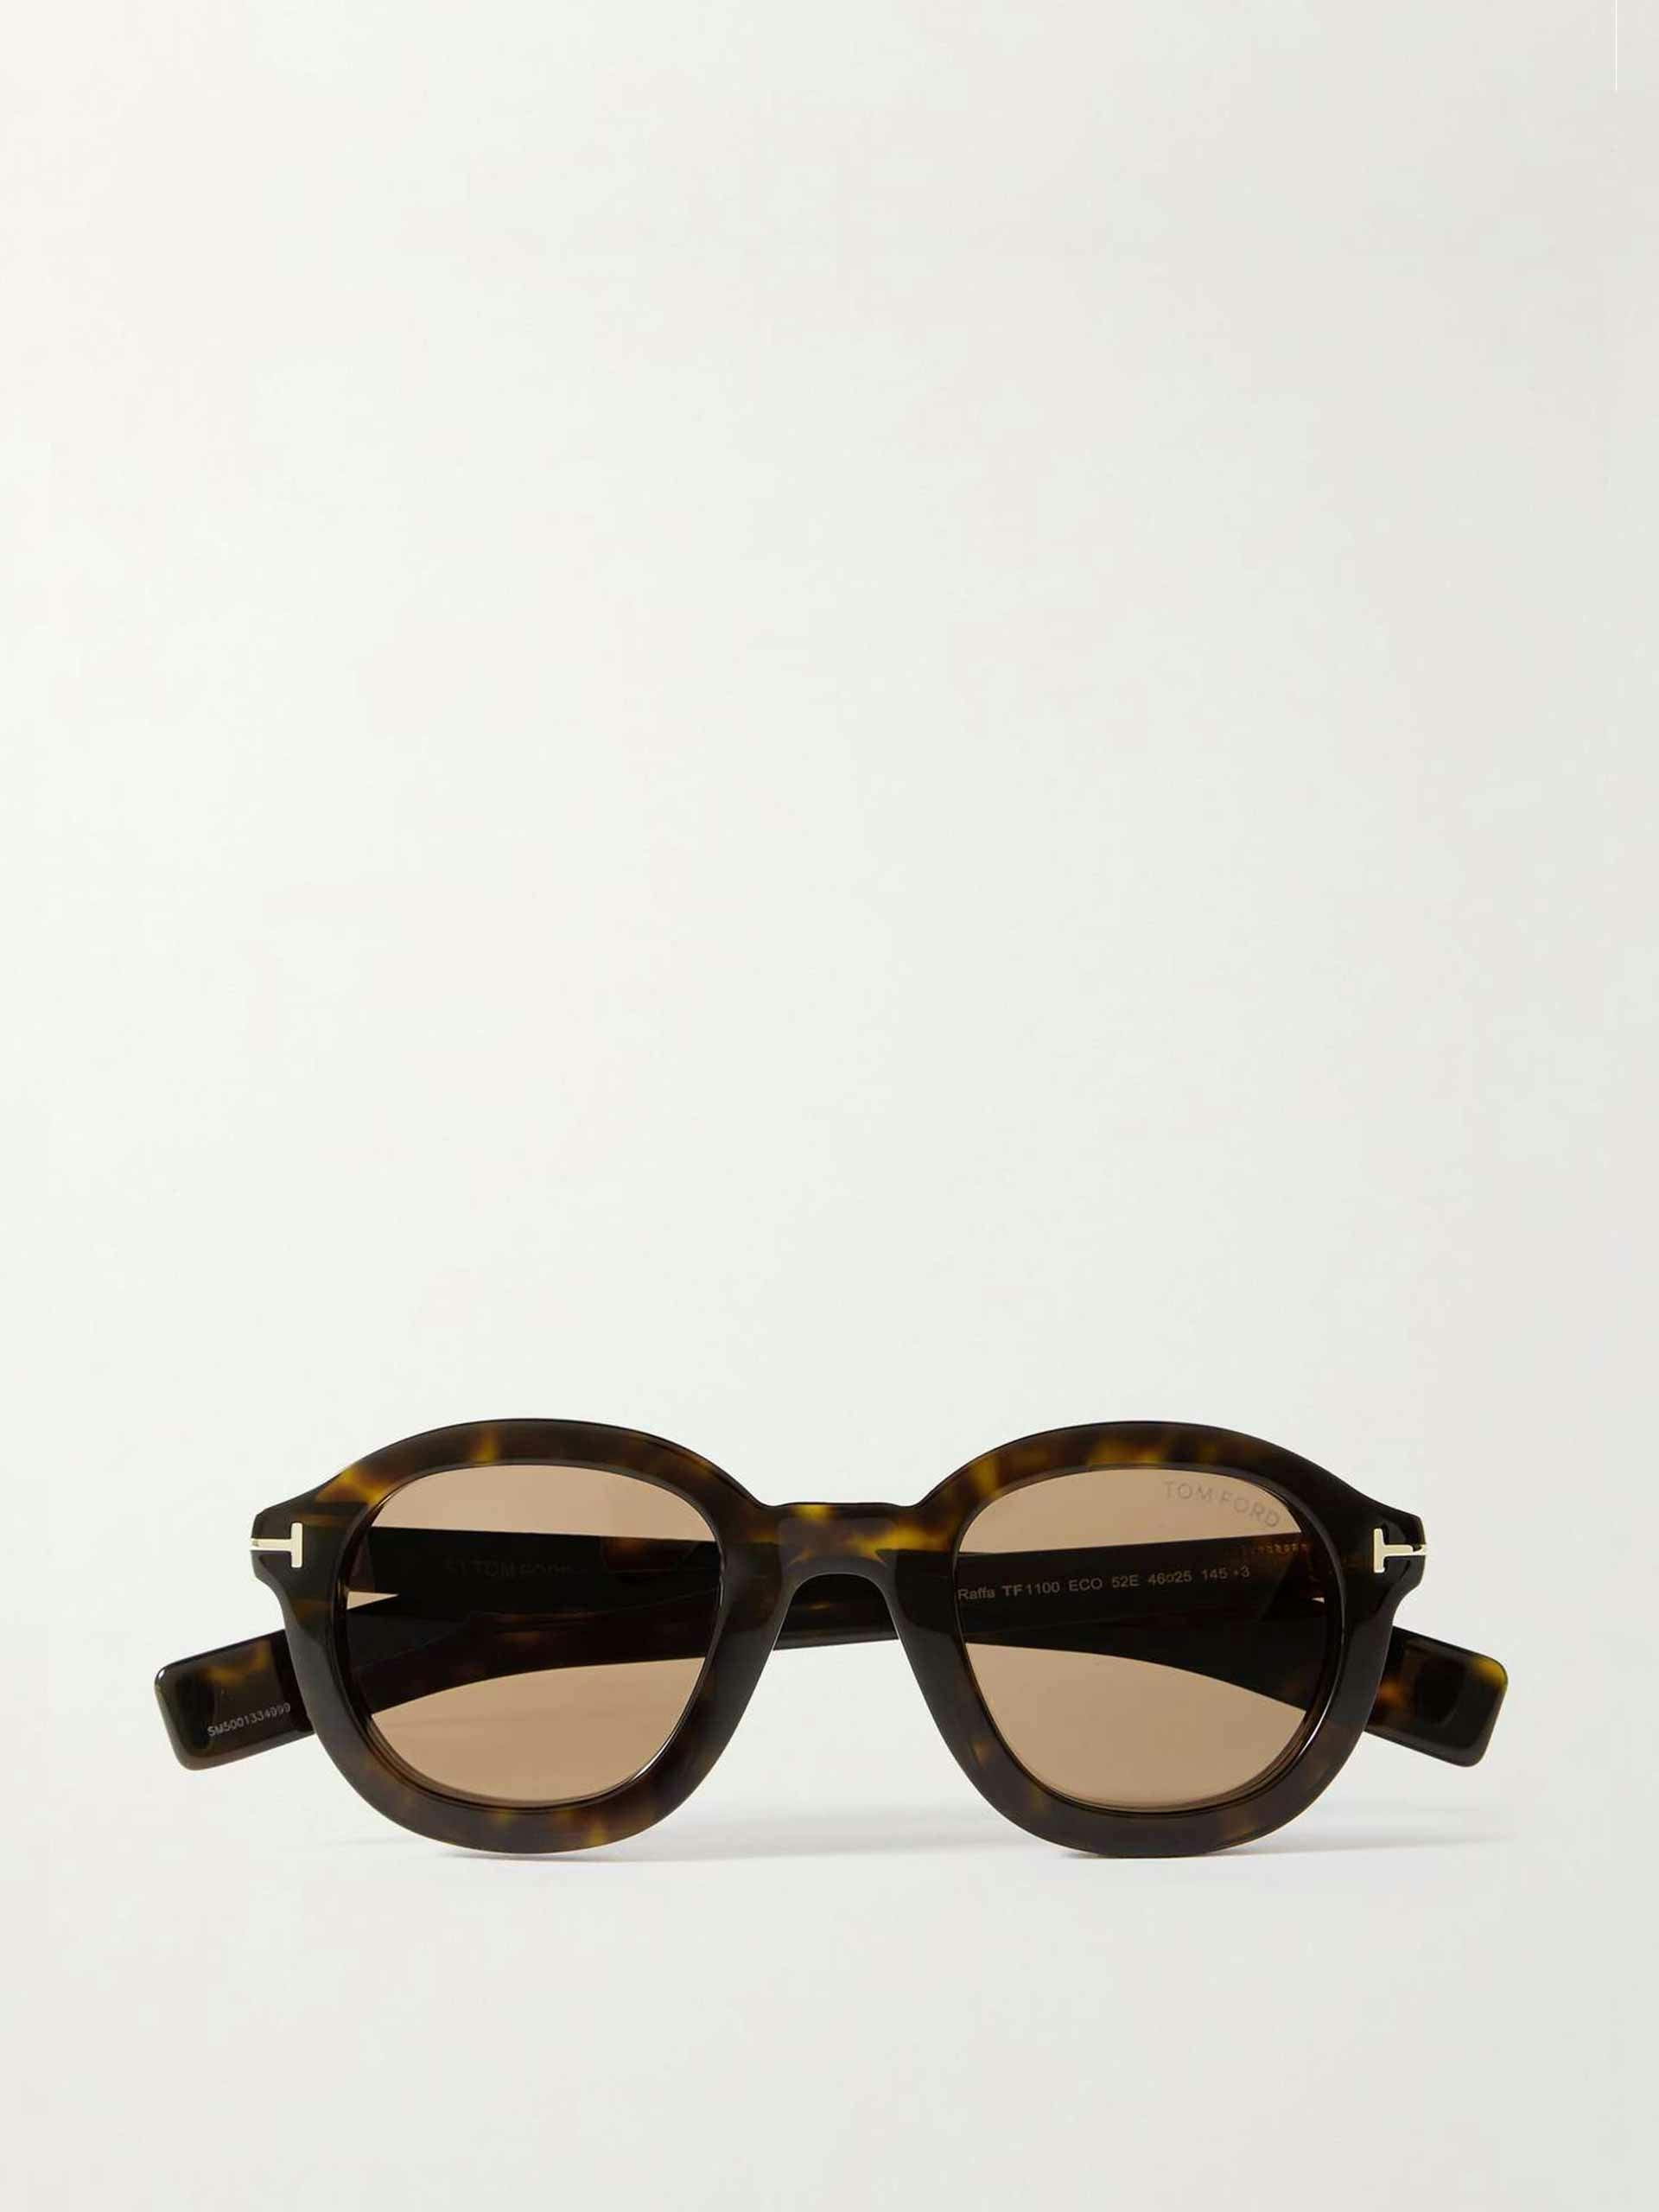 Raffa round-frame tortoiseshell acetate sunglasses